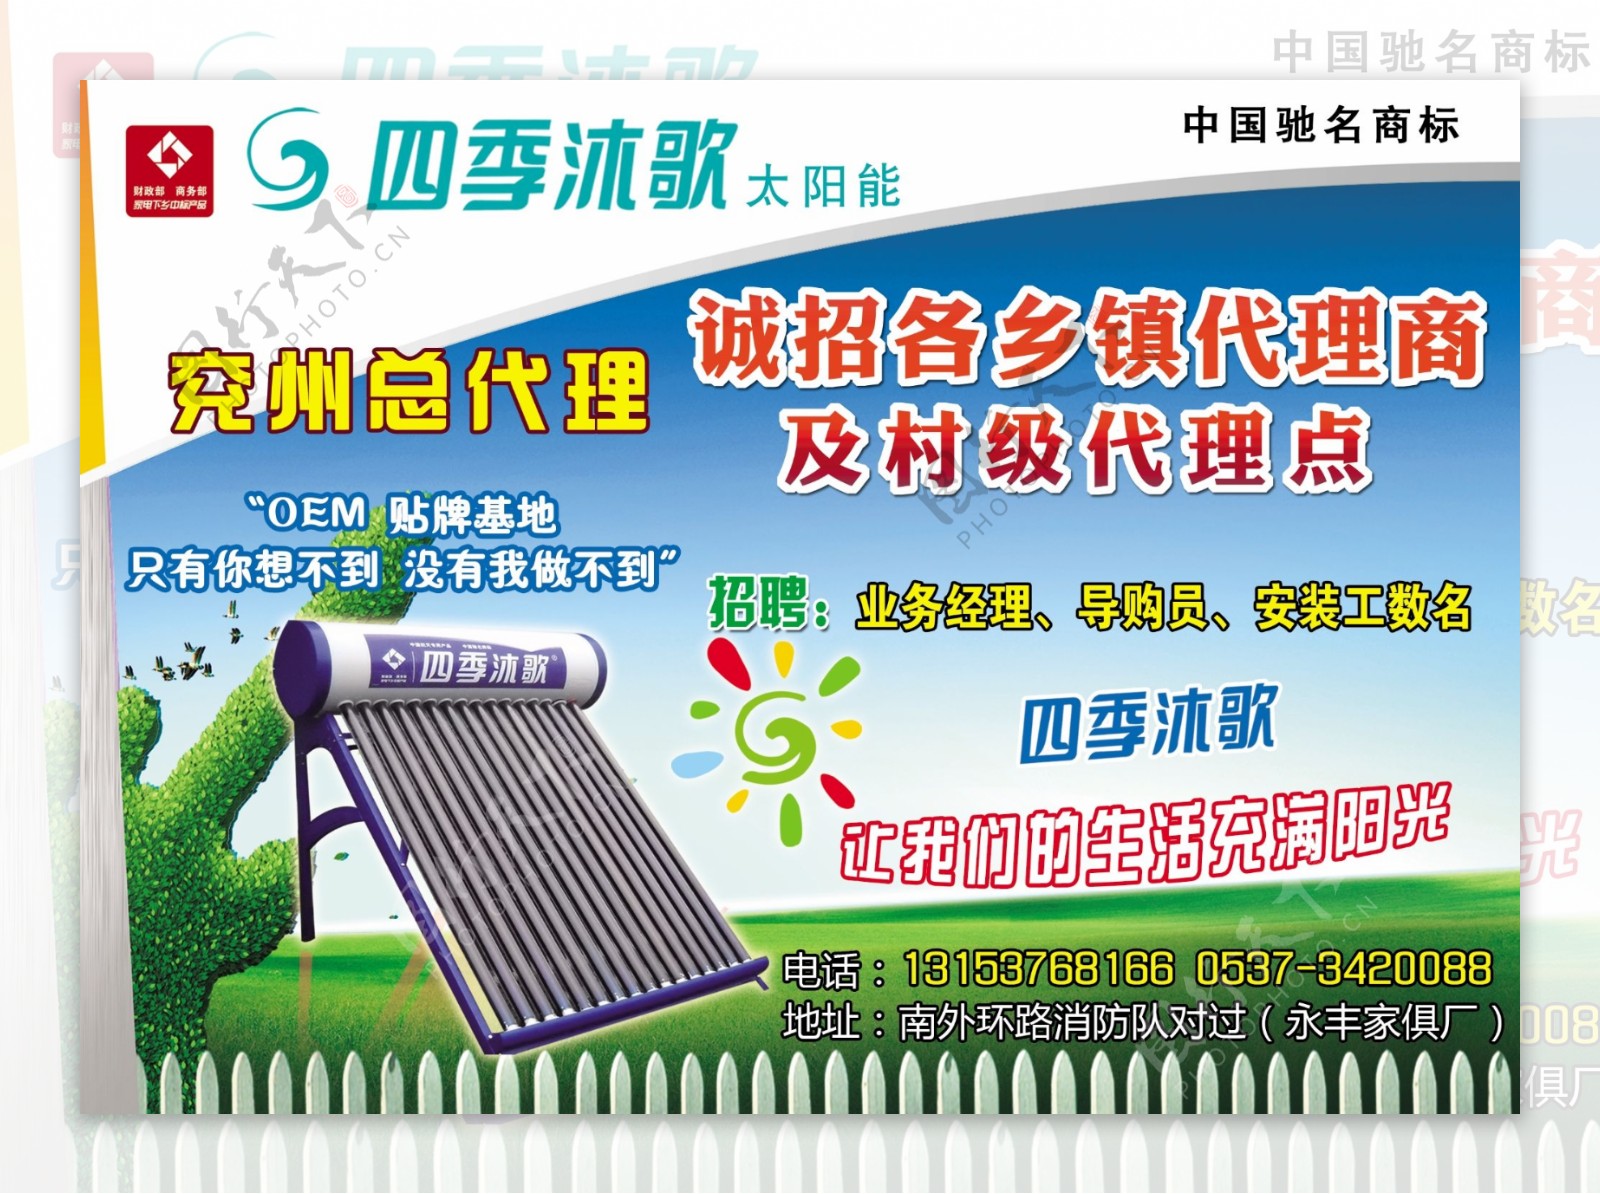 四季沐歌太阳能广告图片